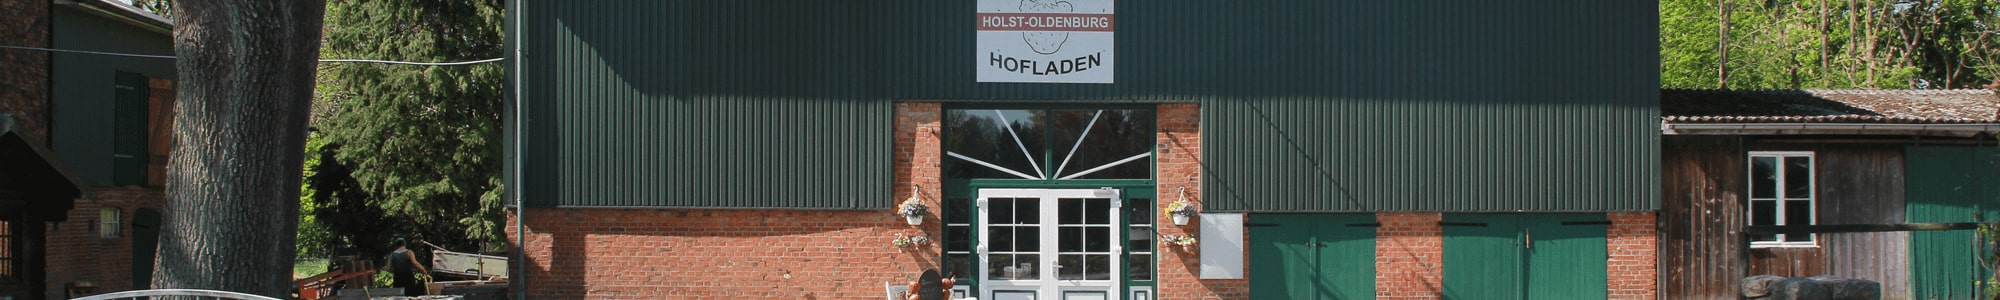 Hofladen Erdbeerhof Holst Oldenburg 300